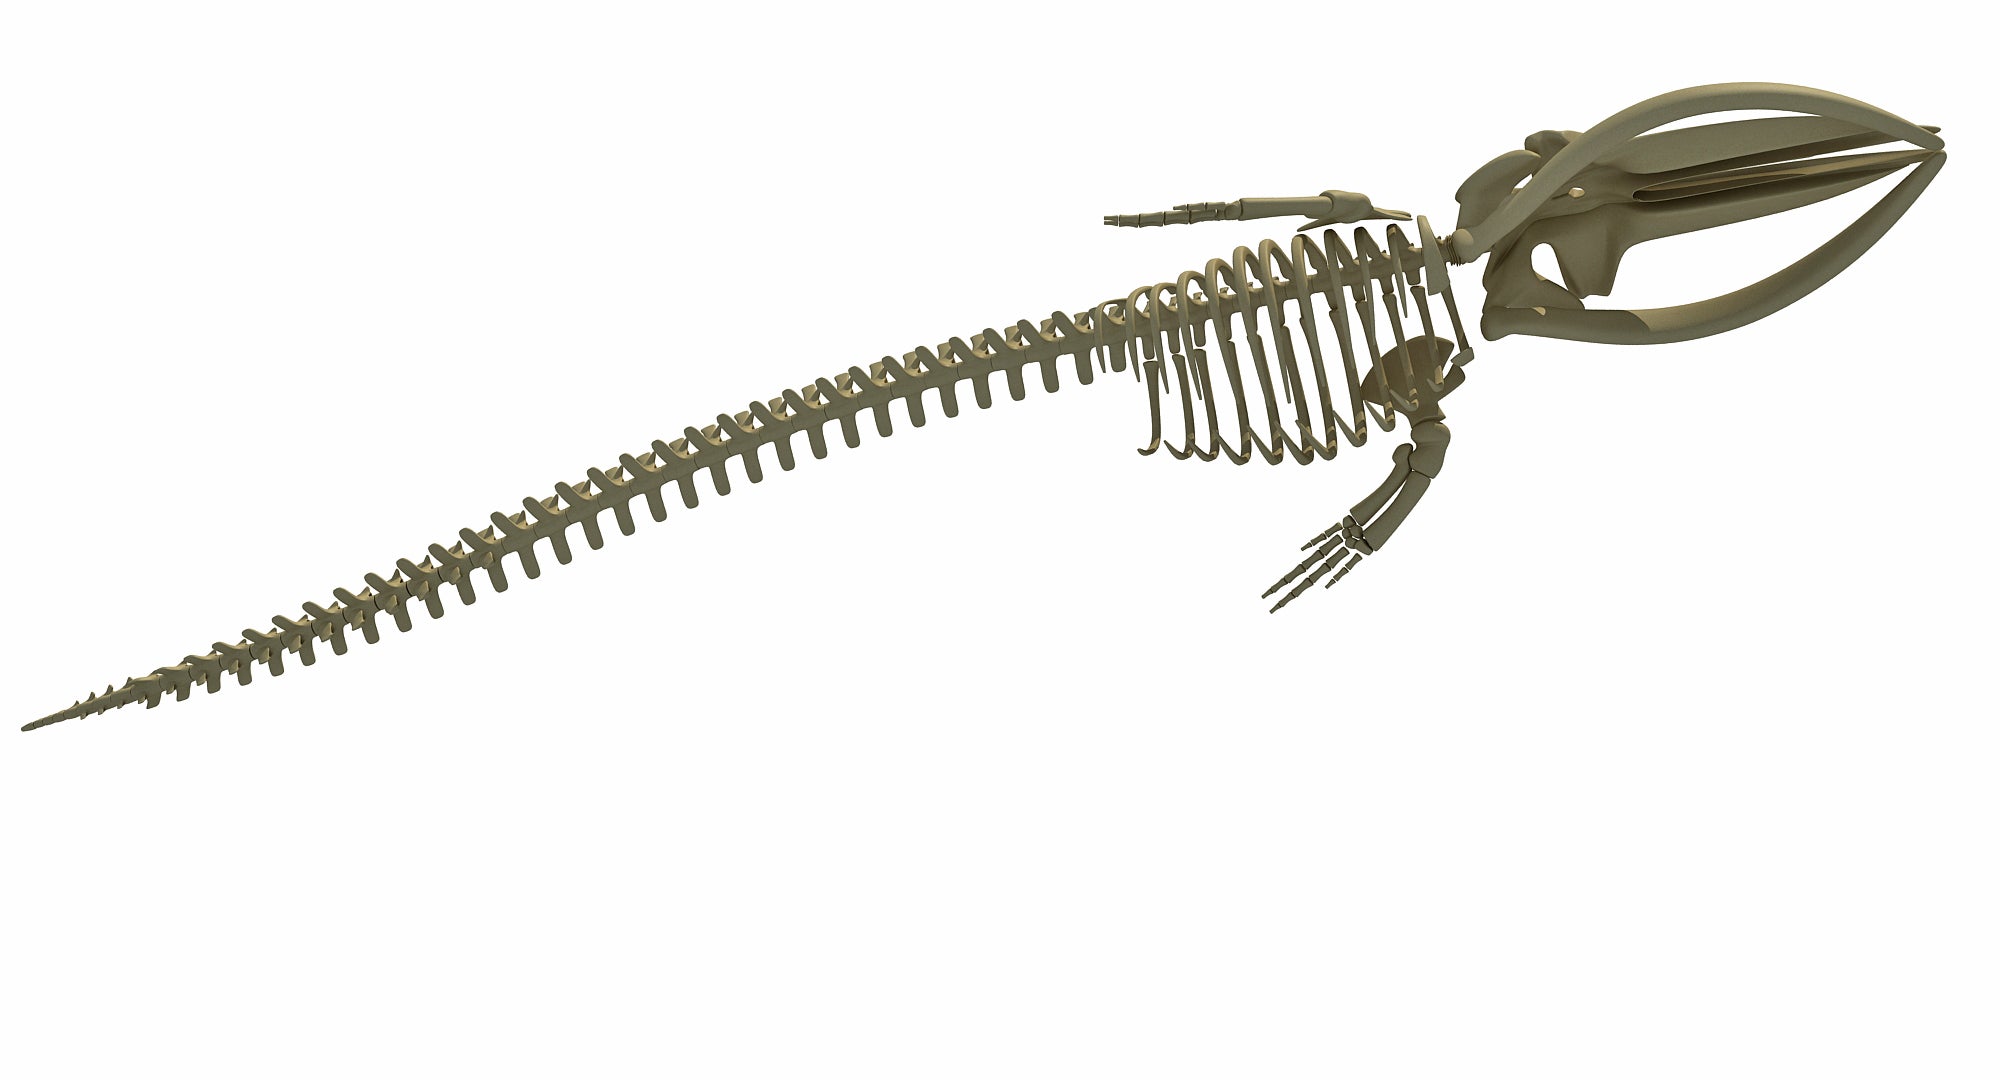 Fin Whale Skeleton